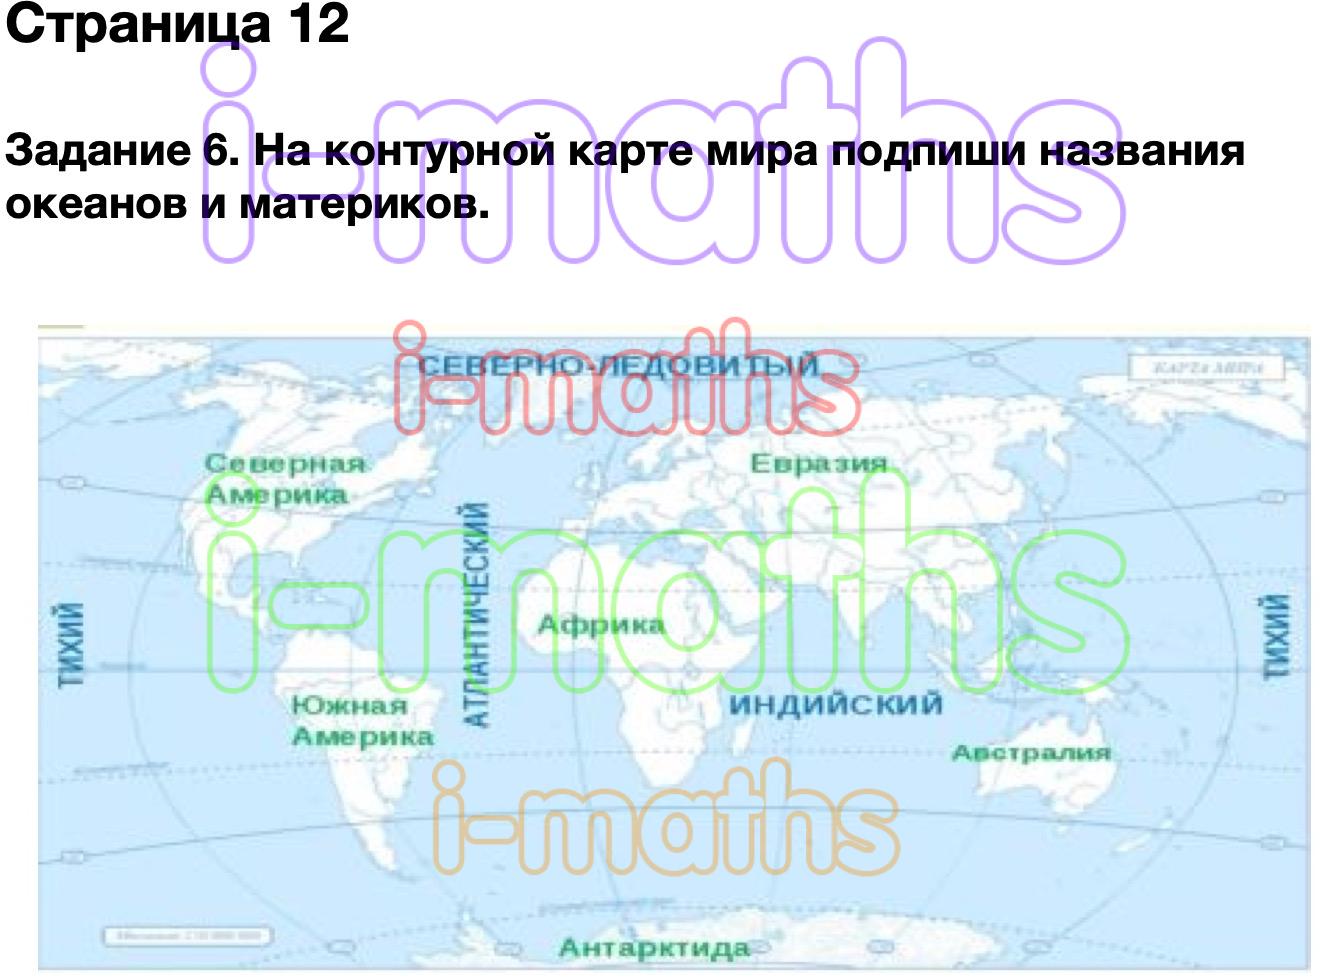 Россия на карте окружающий мир 2 класс видеоурок. Подпиши материки и океаны. Что такое карта 2 класс окружающий мир. Карта это окружающий мир 2 класс